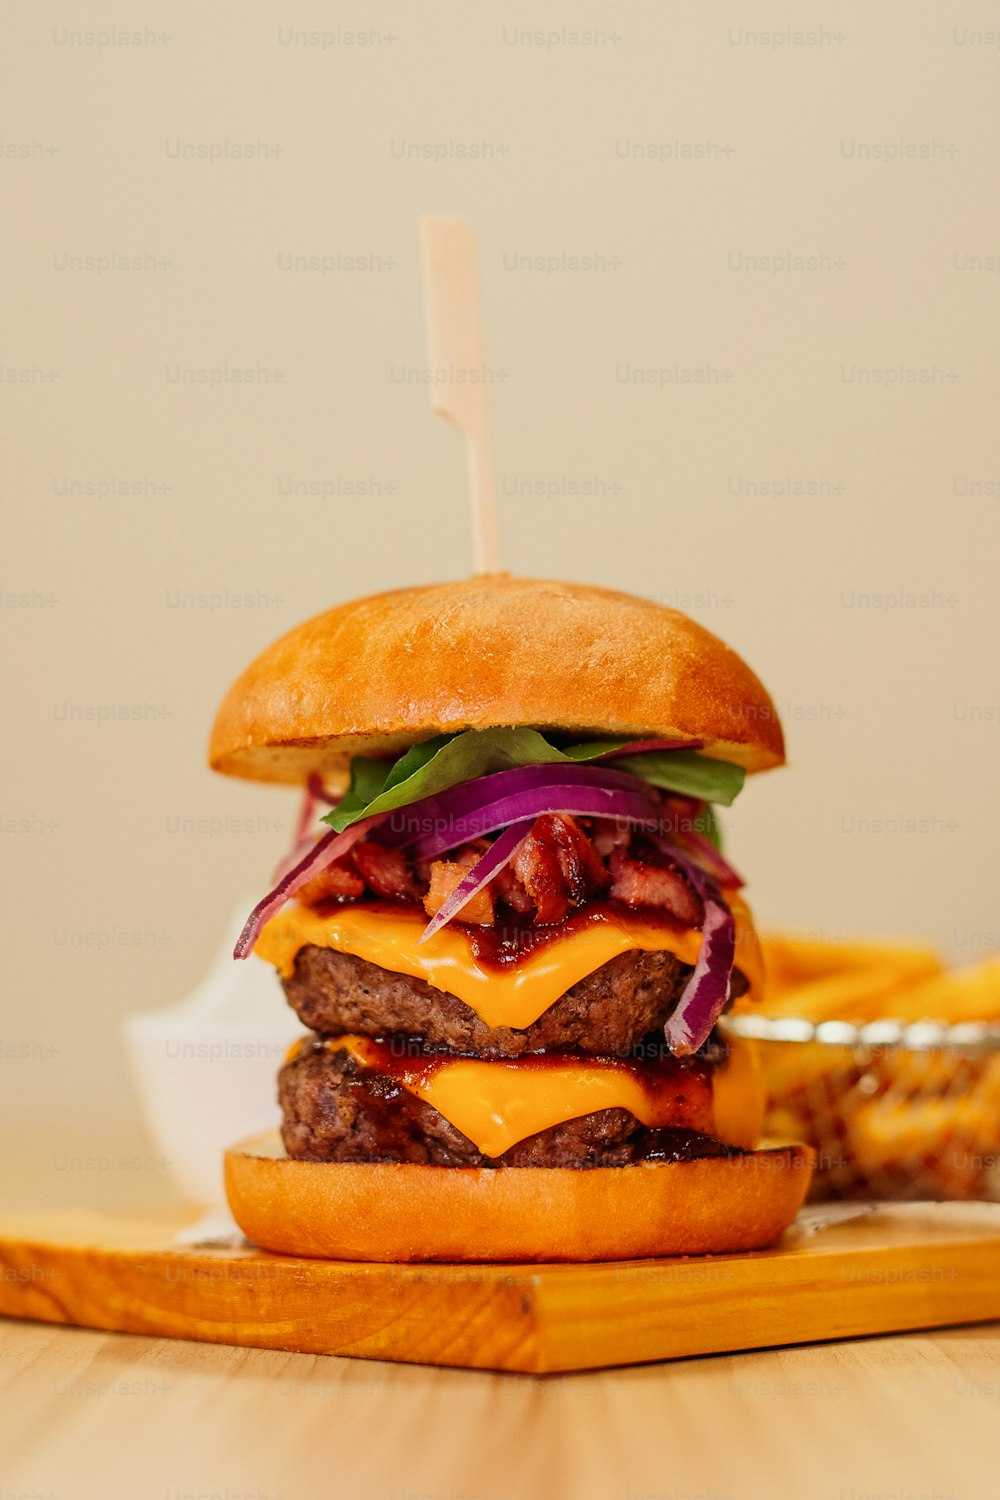 un cheeseburger avec oignon, laitue et cornichon